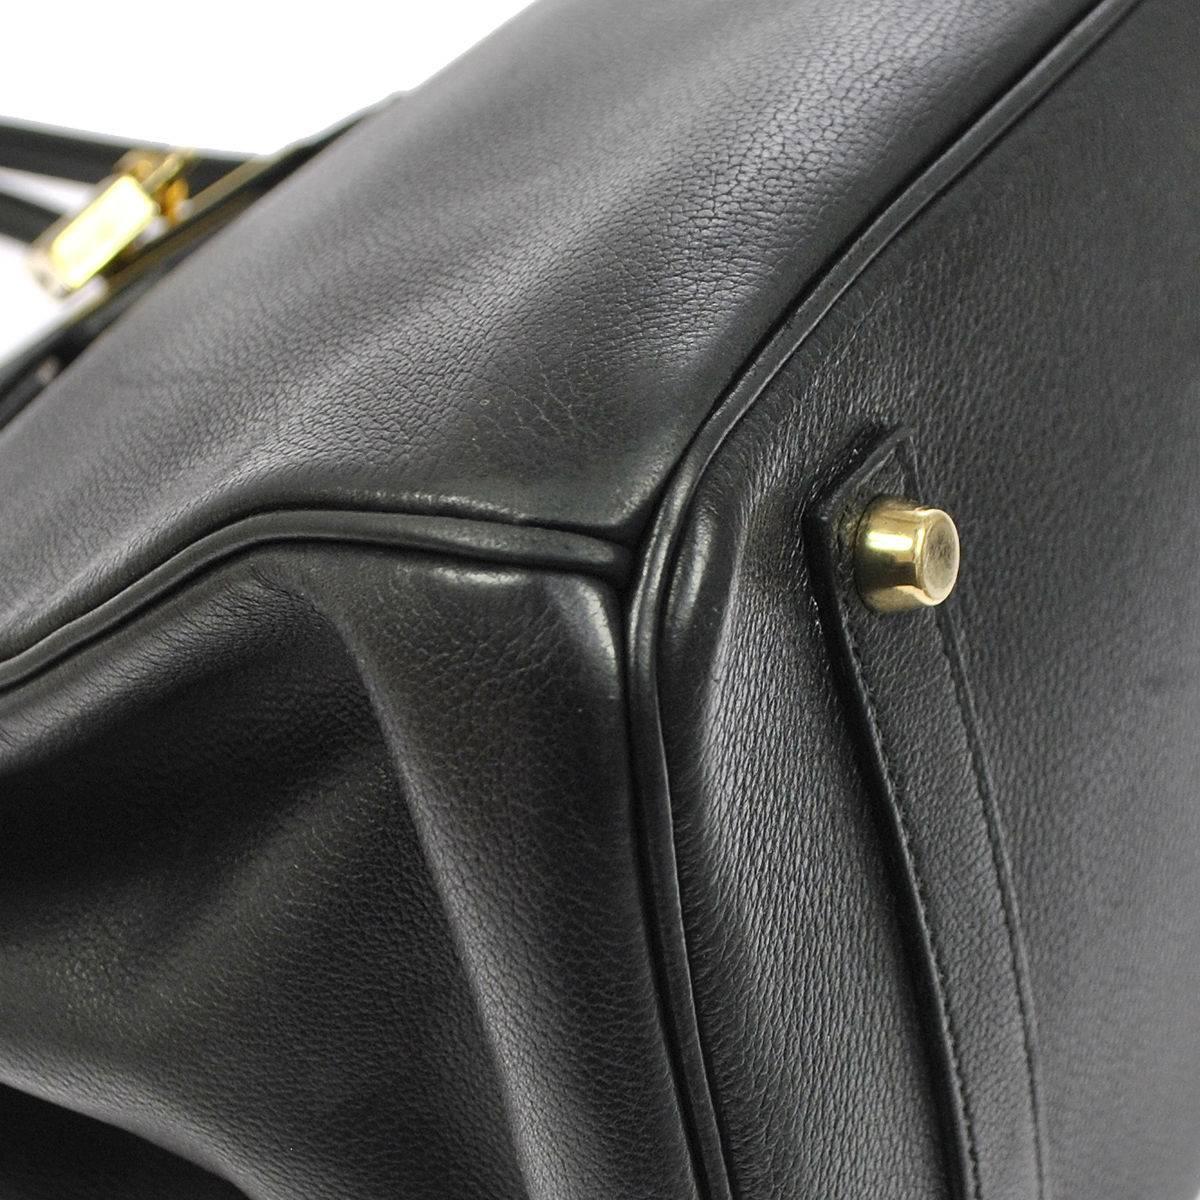 Hermes 35 Black Leather Gold Carryall Tote Top Handle Satchel Shoulder Bag 2